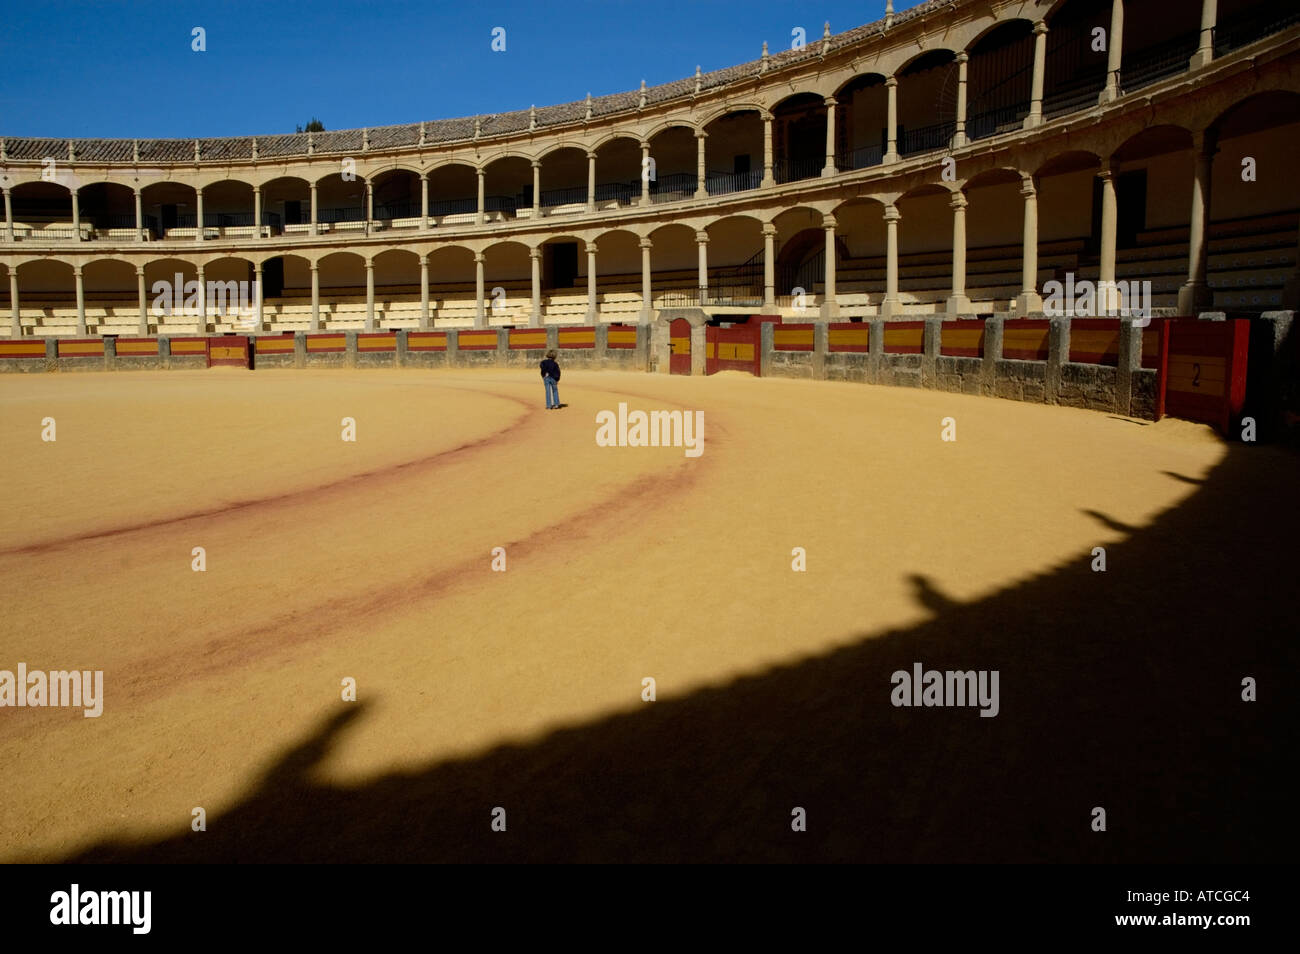 Inside the Plaza de Toros de Ronda, a bullring arena in Ronda, Andalusia, Spain. Stock Photo